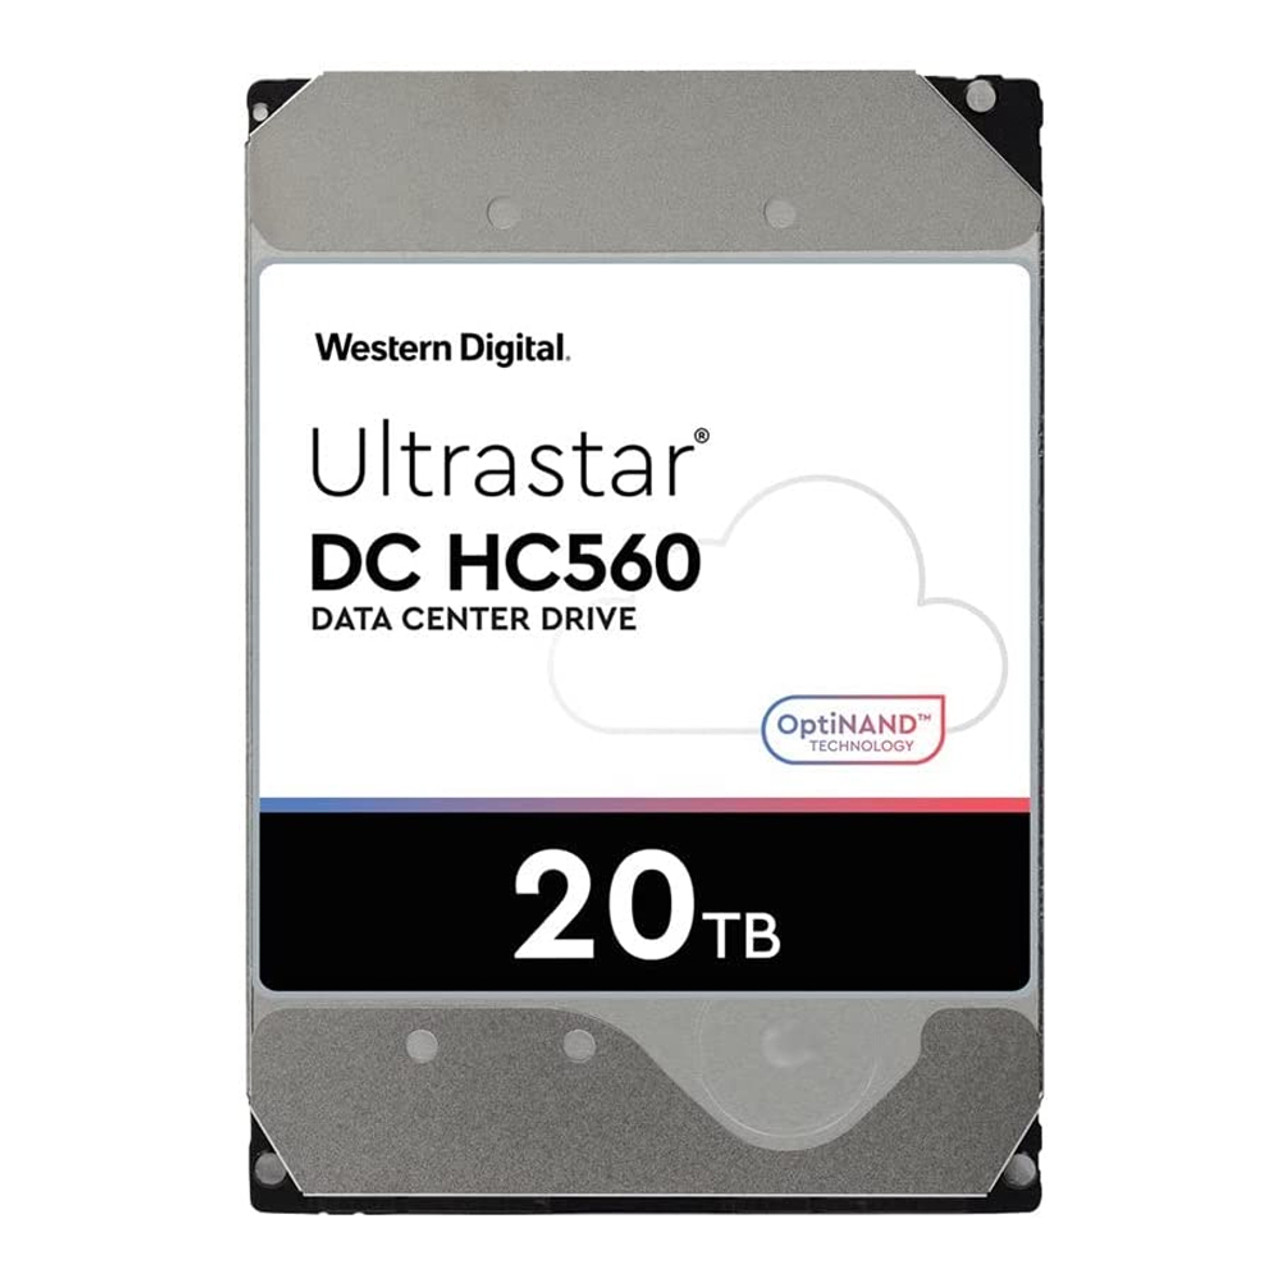 WD WUH722020ALE6L4 Ultrastar DC HC560 0F38755 20TB 512MB Cache 7200RPM SATA 6.0Gb/s 512E SE NP3 3.5" Internal Hard Drive